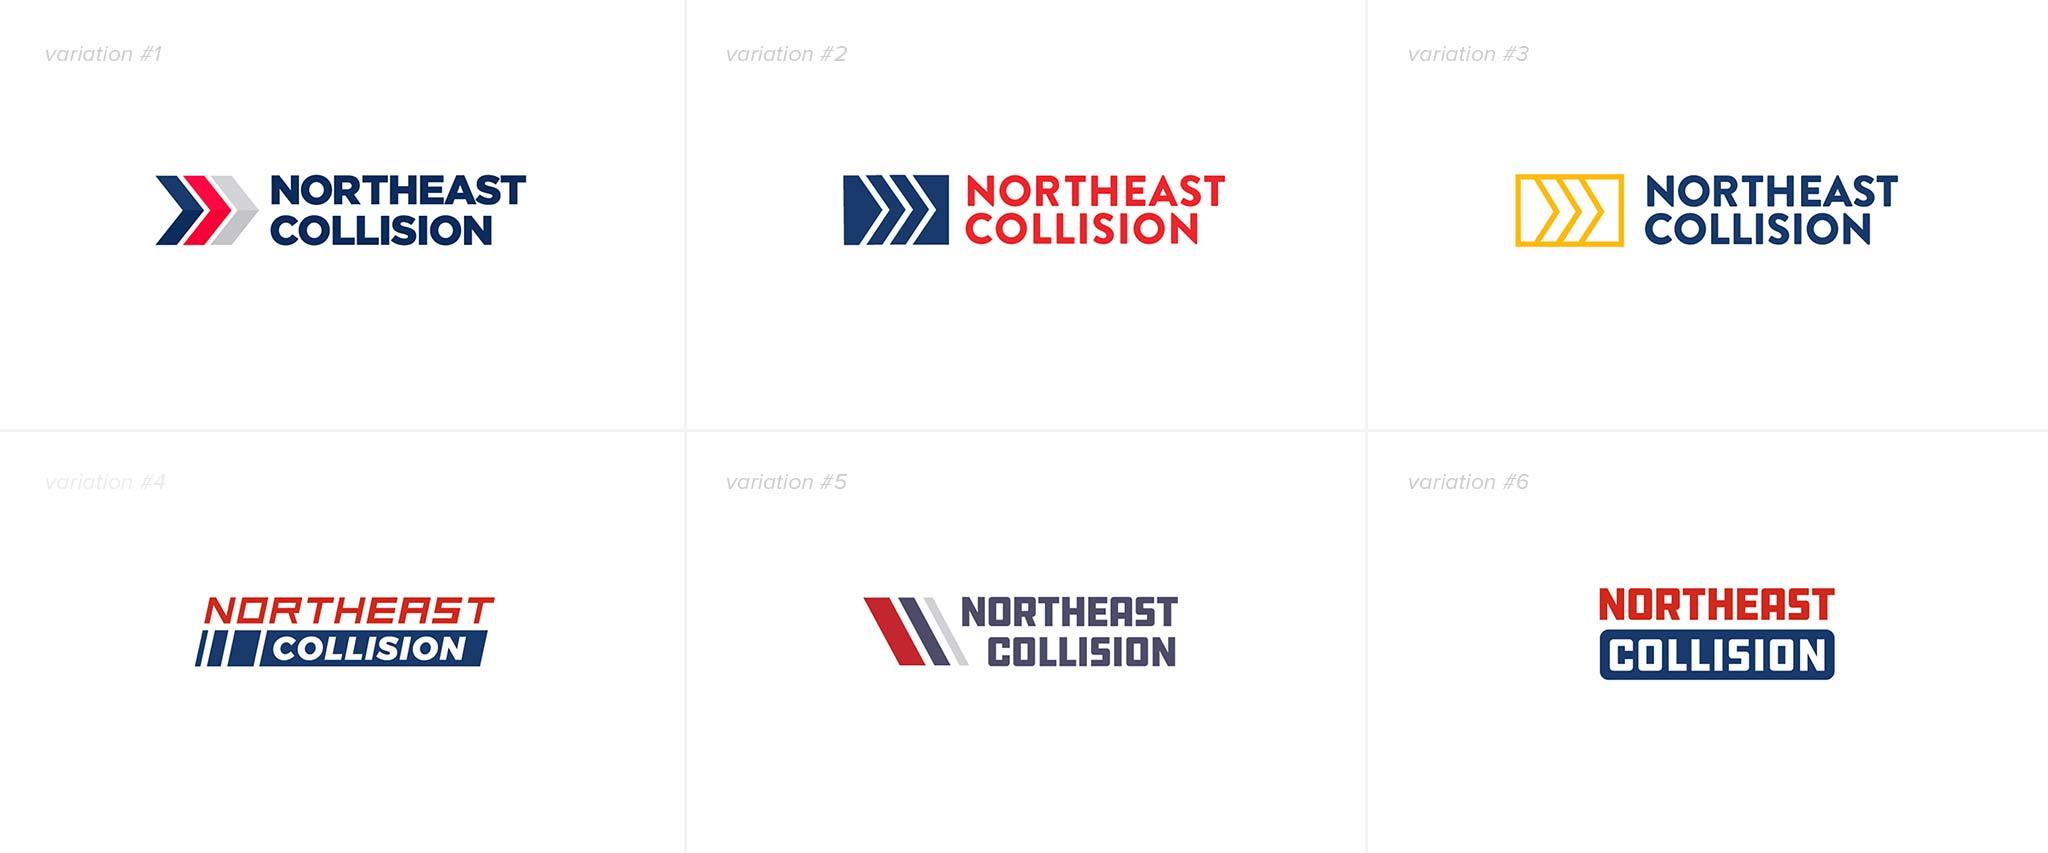 Northeast Collision Brand Refresh Gallery